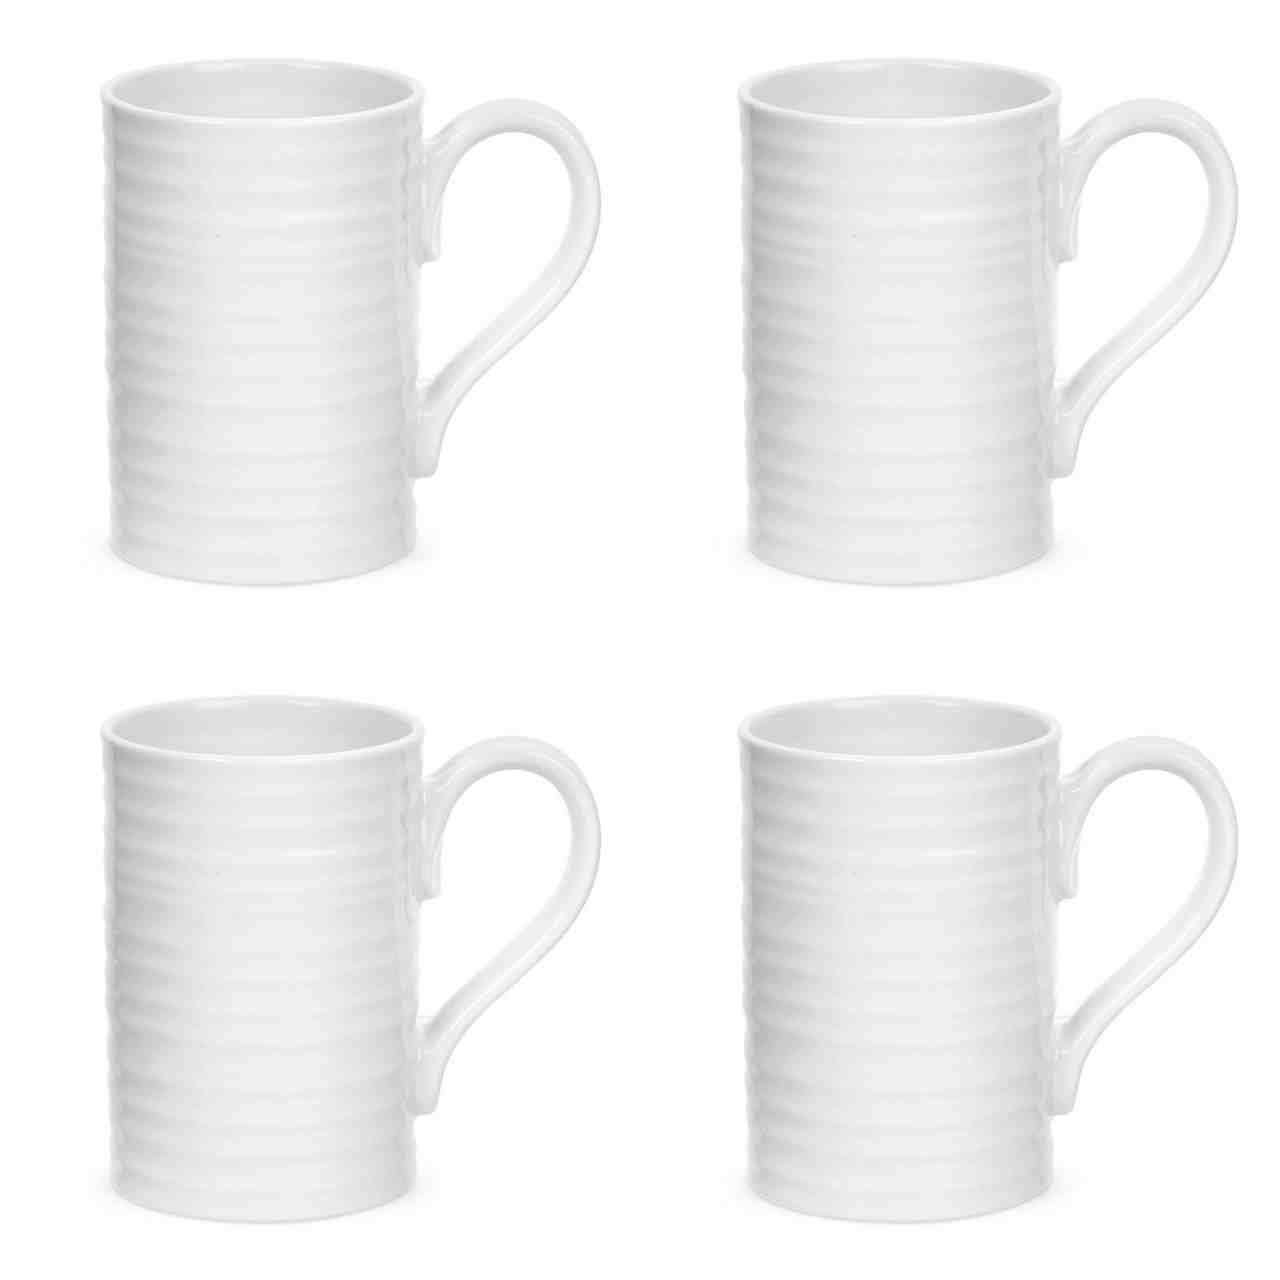 Sophie Conran White Mug Set of 4 - Tall